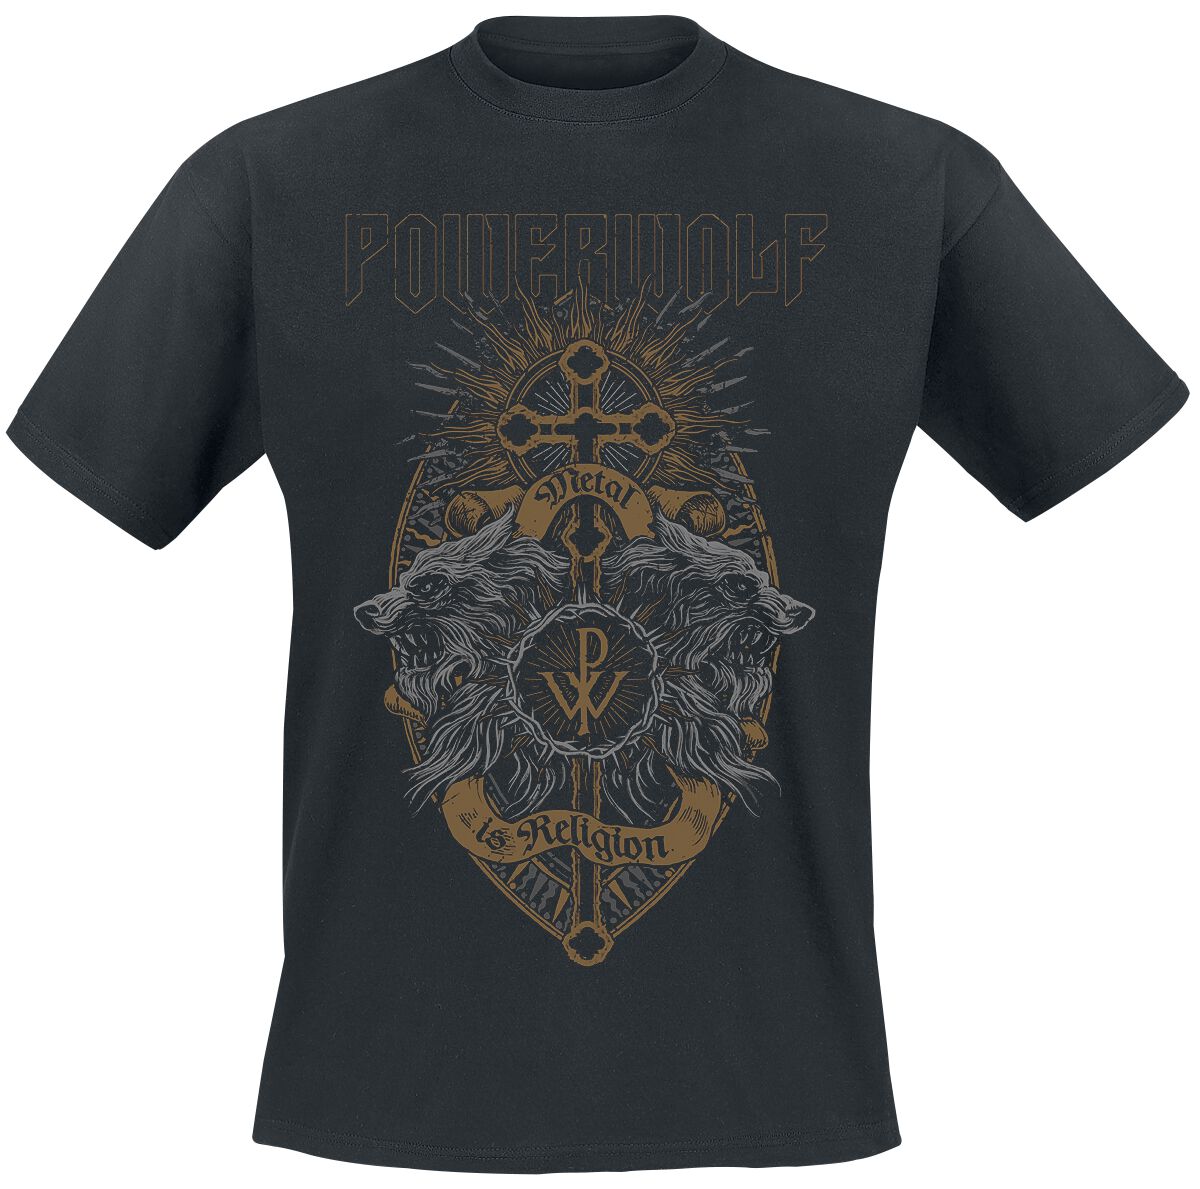 Powerwolf T-Shirt - Crest Wolves - S bis XL - für Männer - Größe S - schwarz  - Lizenziertes Merchandise!